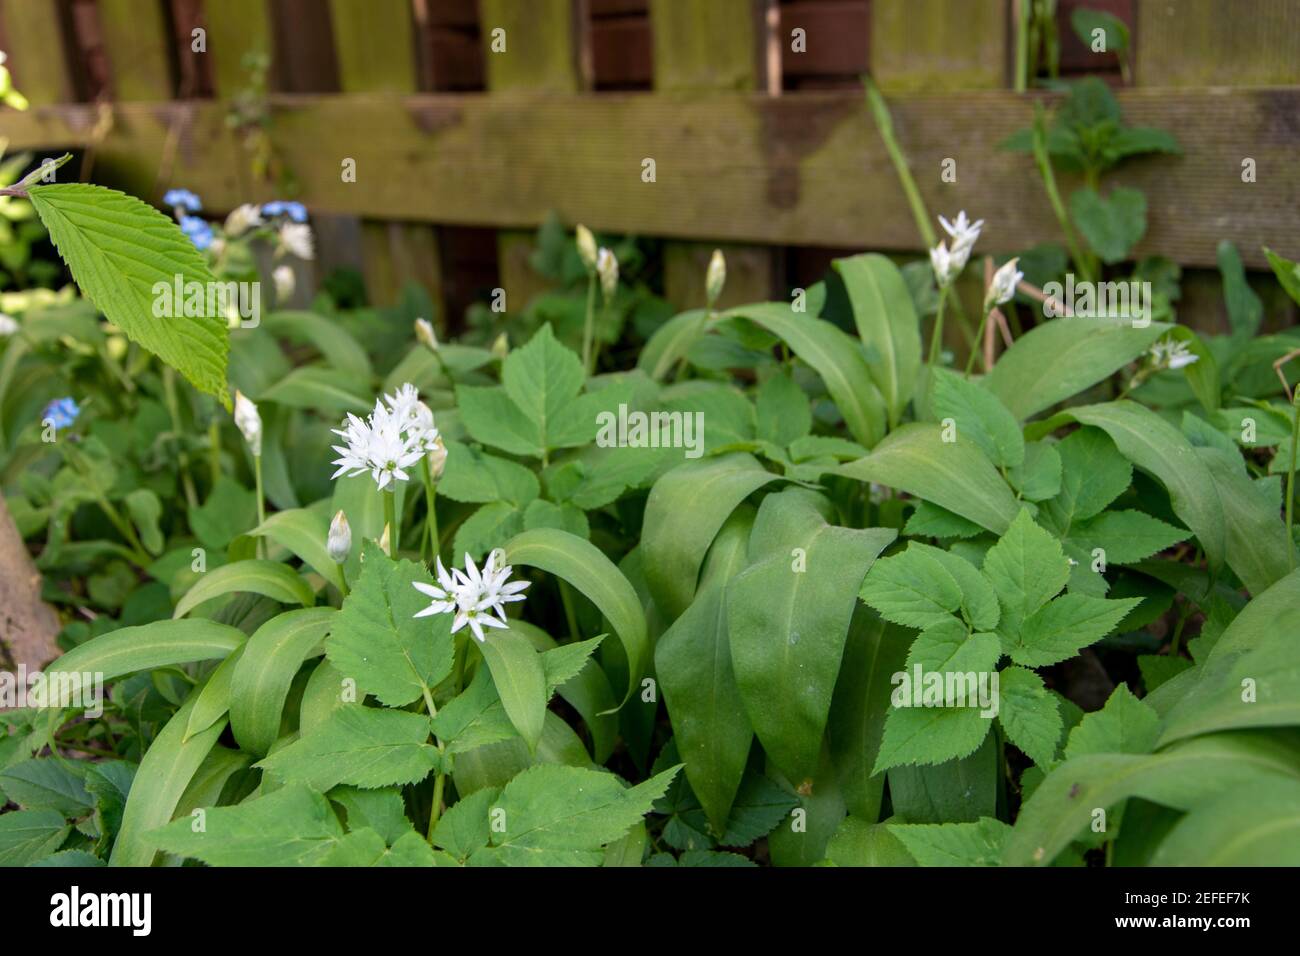 El ajo silvestre, Allium ursinum, es una planta medicinal y vegetal silvestre valorada. También se puede cultivar en el jardín. Foto de stock